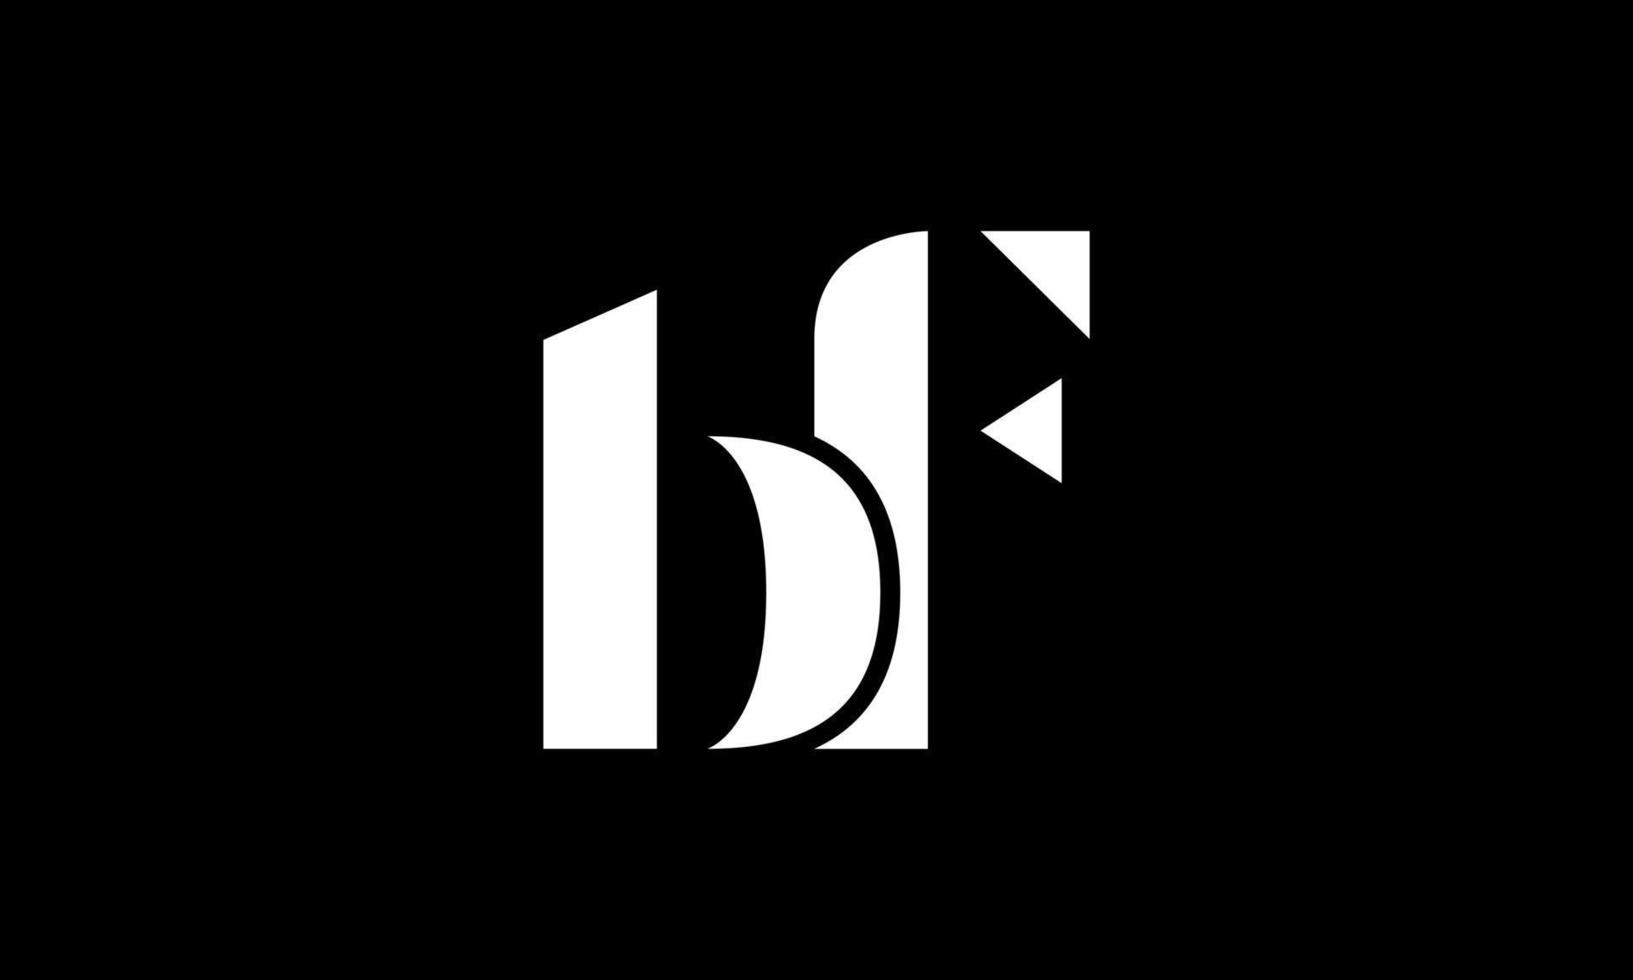 första brev bf logotyp design i svart bakgrund. proffs vektor. vektor